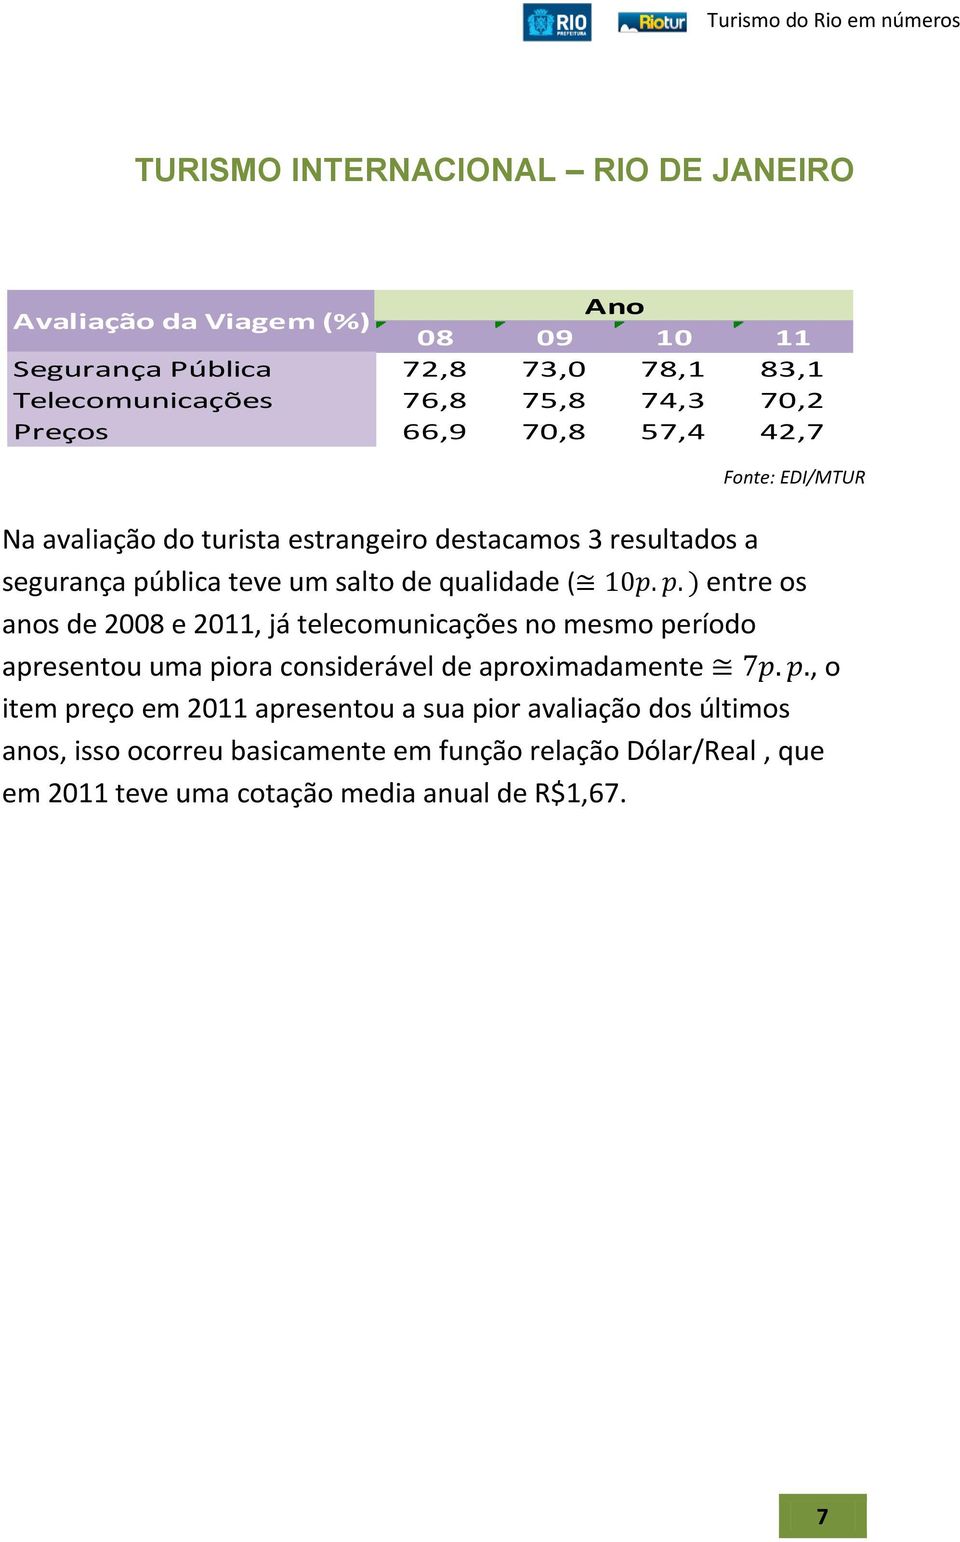 qualidade ( entre os anos de 2008 e 2011, já telecomunicações no mesmo período apresentou uma piora considerável de aproximadamente, o item preço em